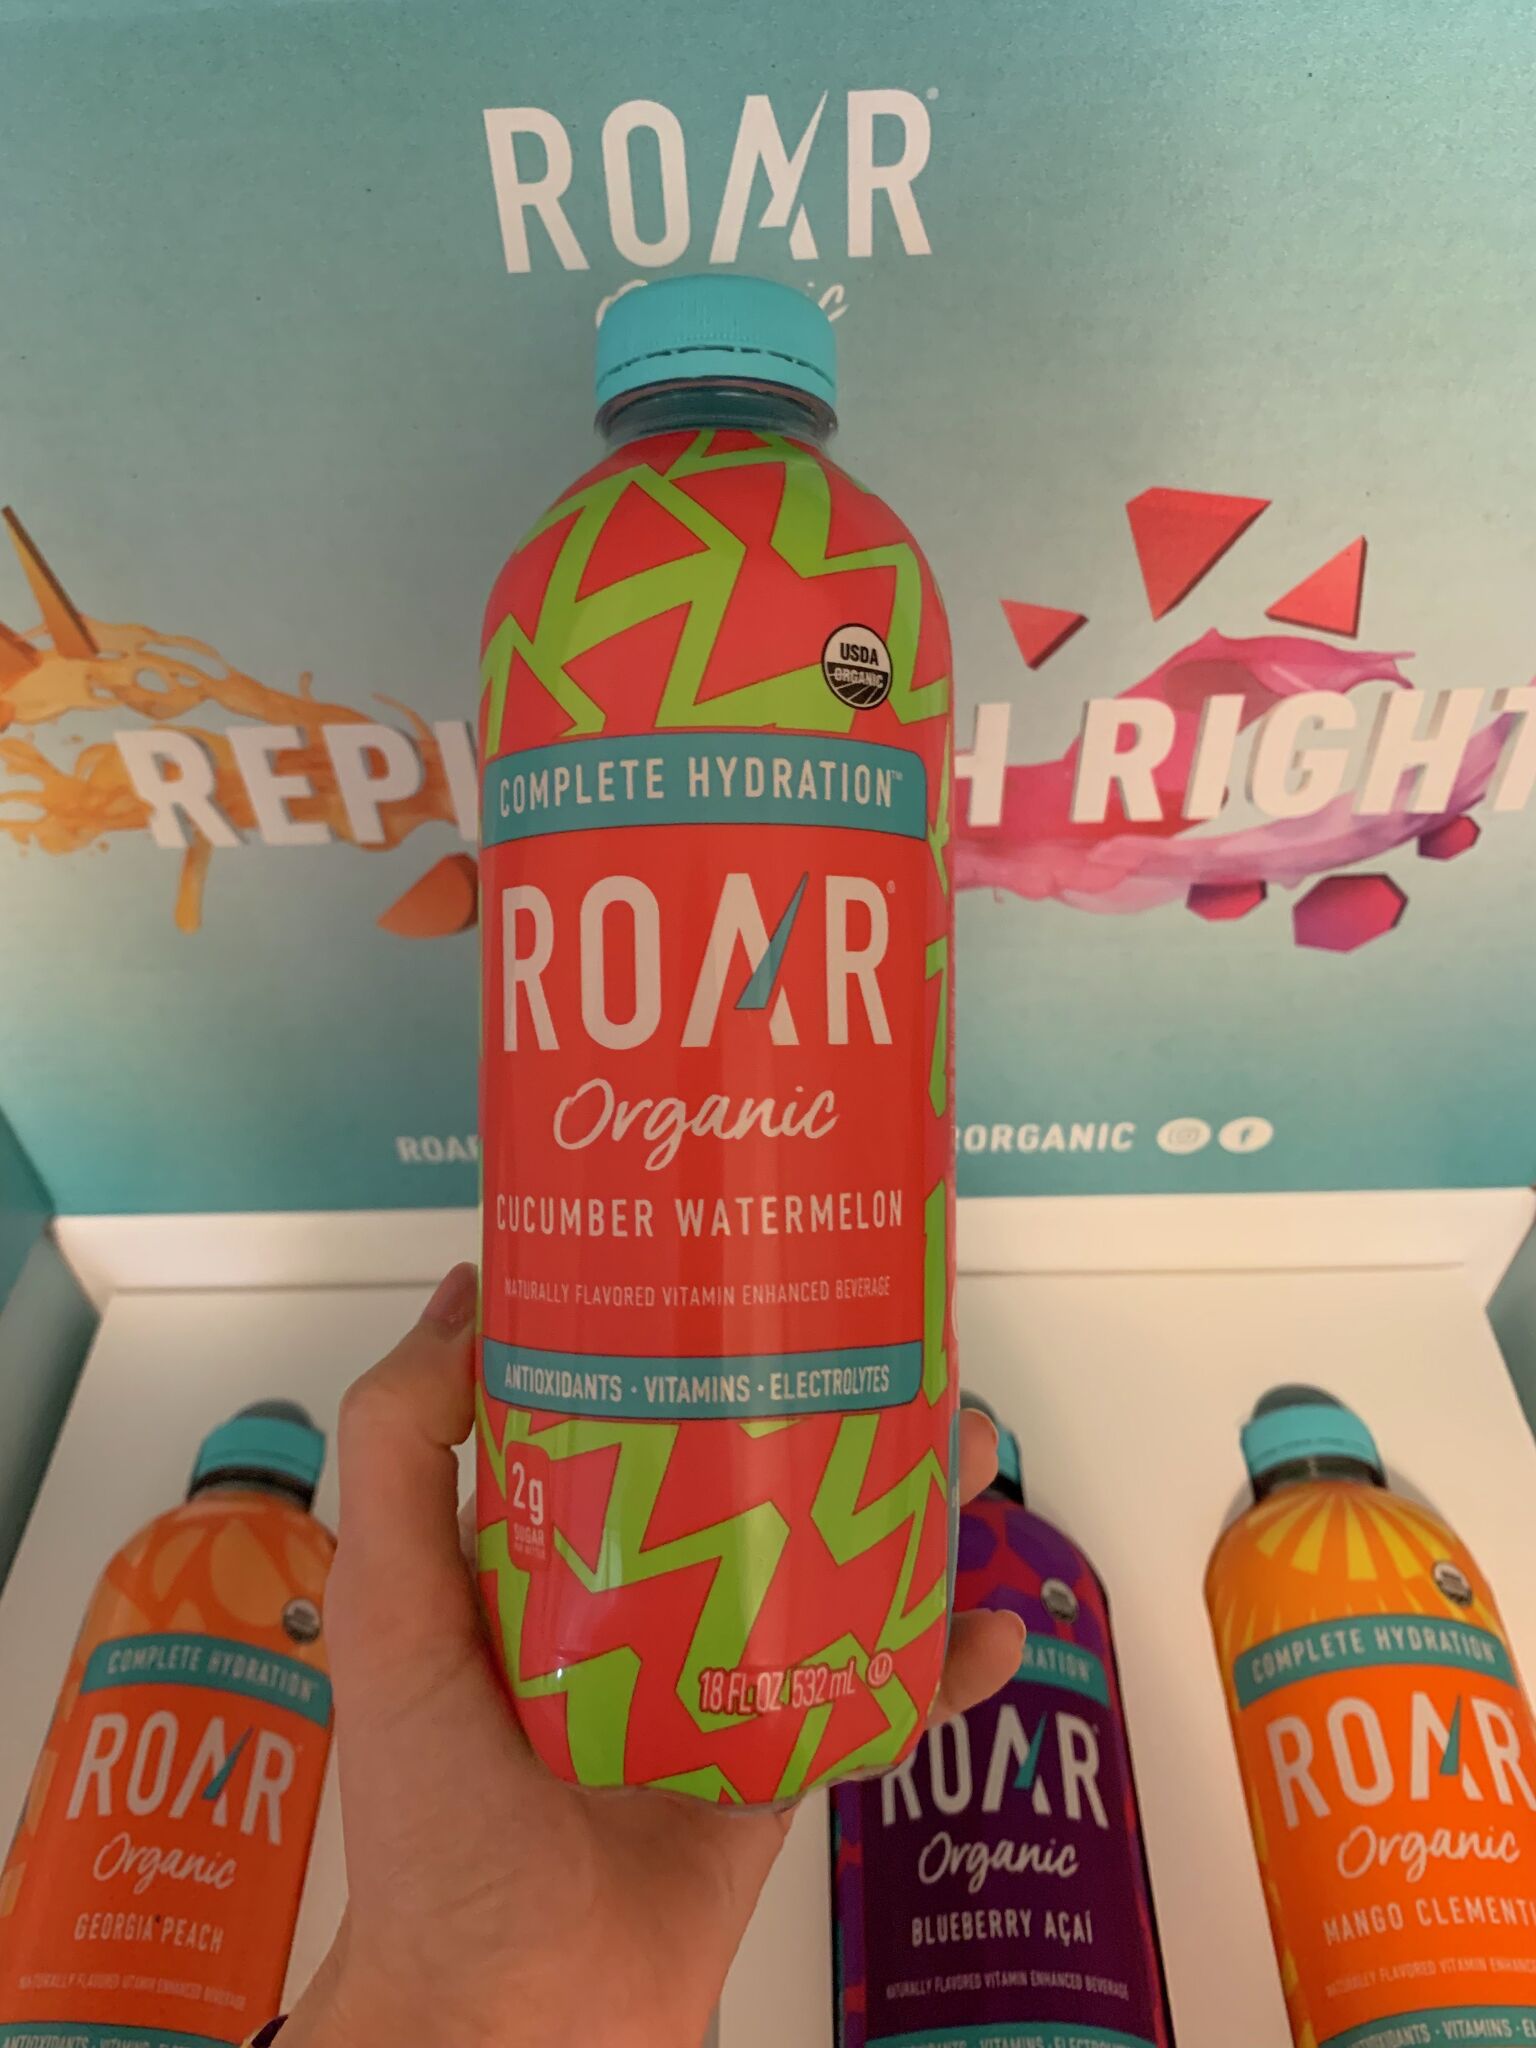 Peach Hydration Drink, 12 Pack - ROAR Organic